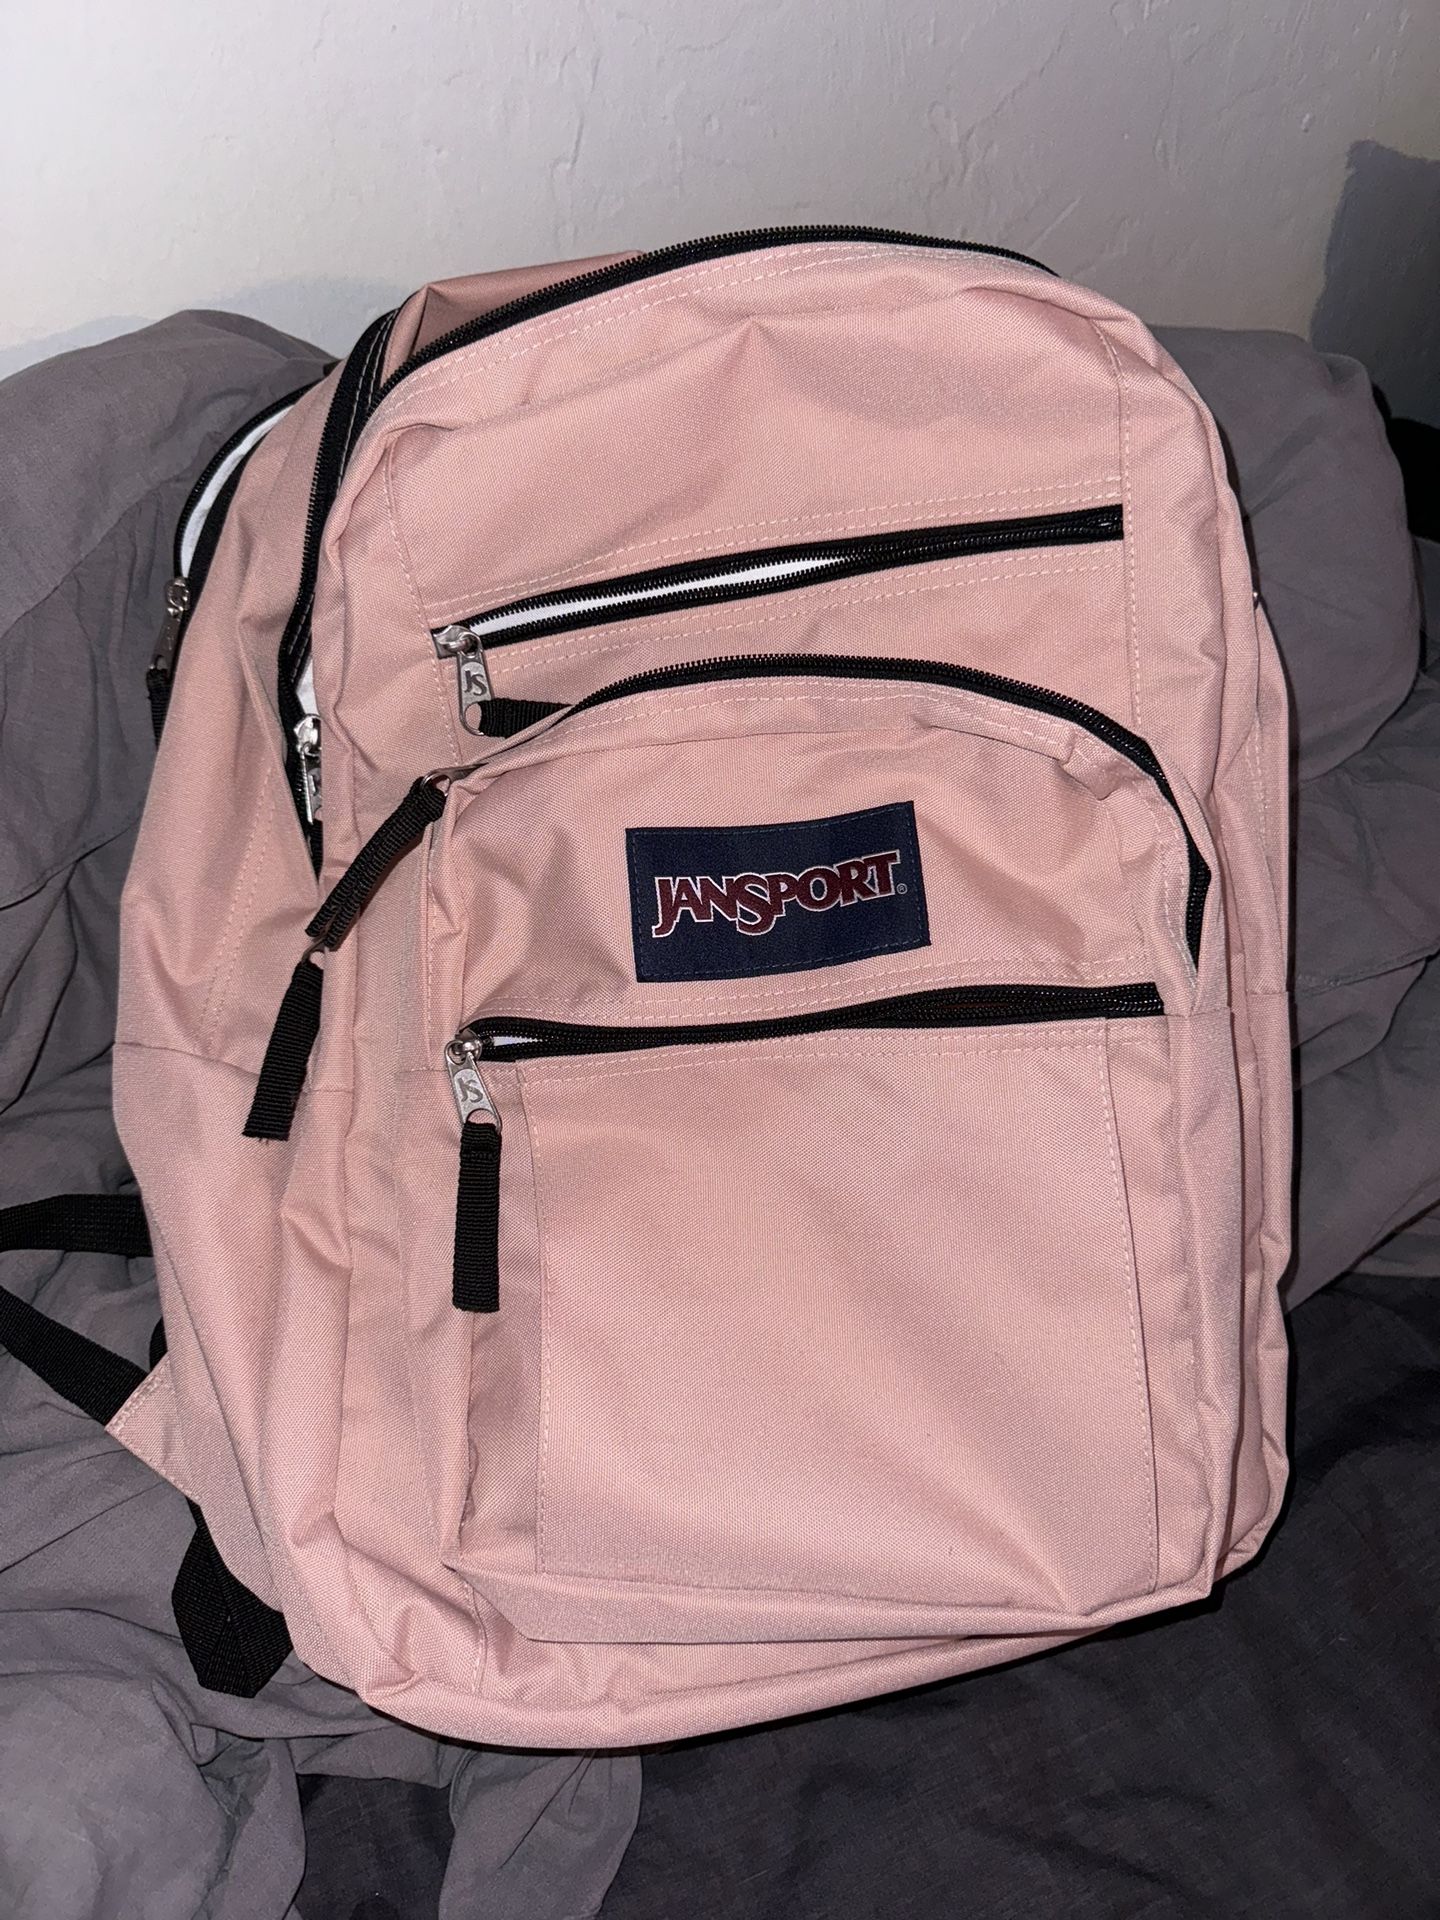 Jansports Pink Backpack